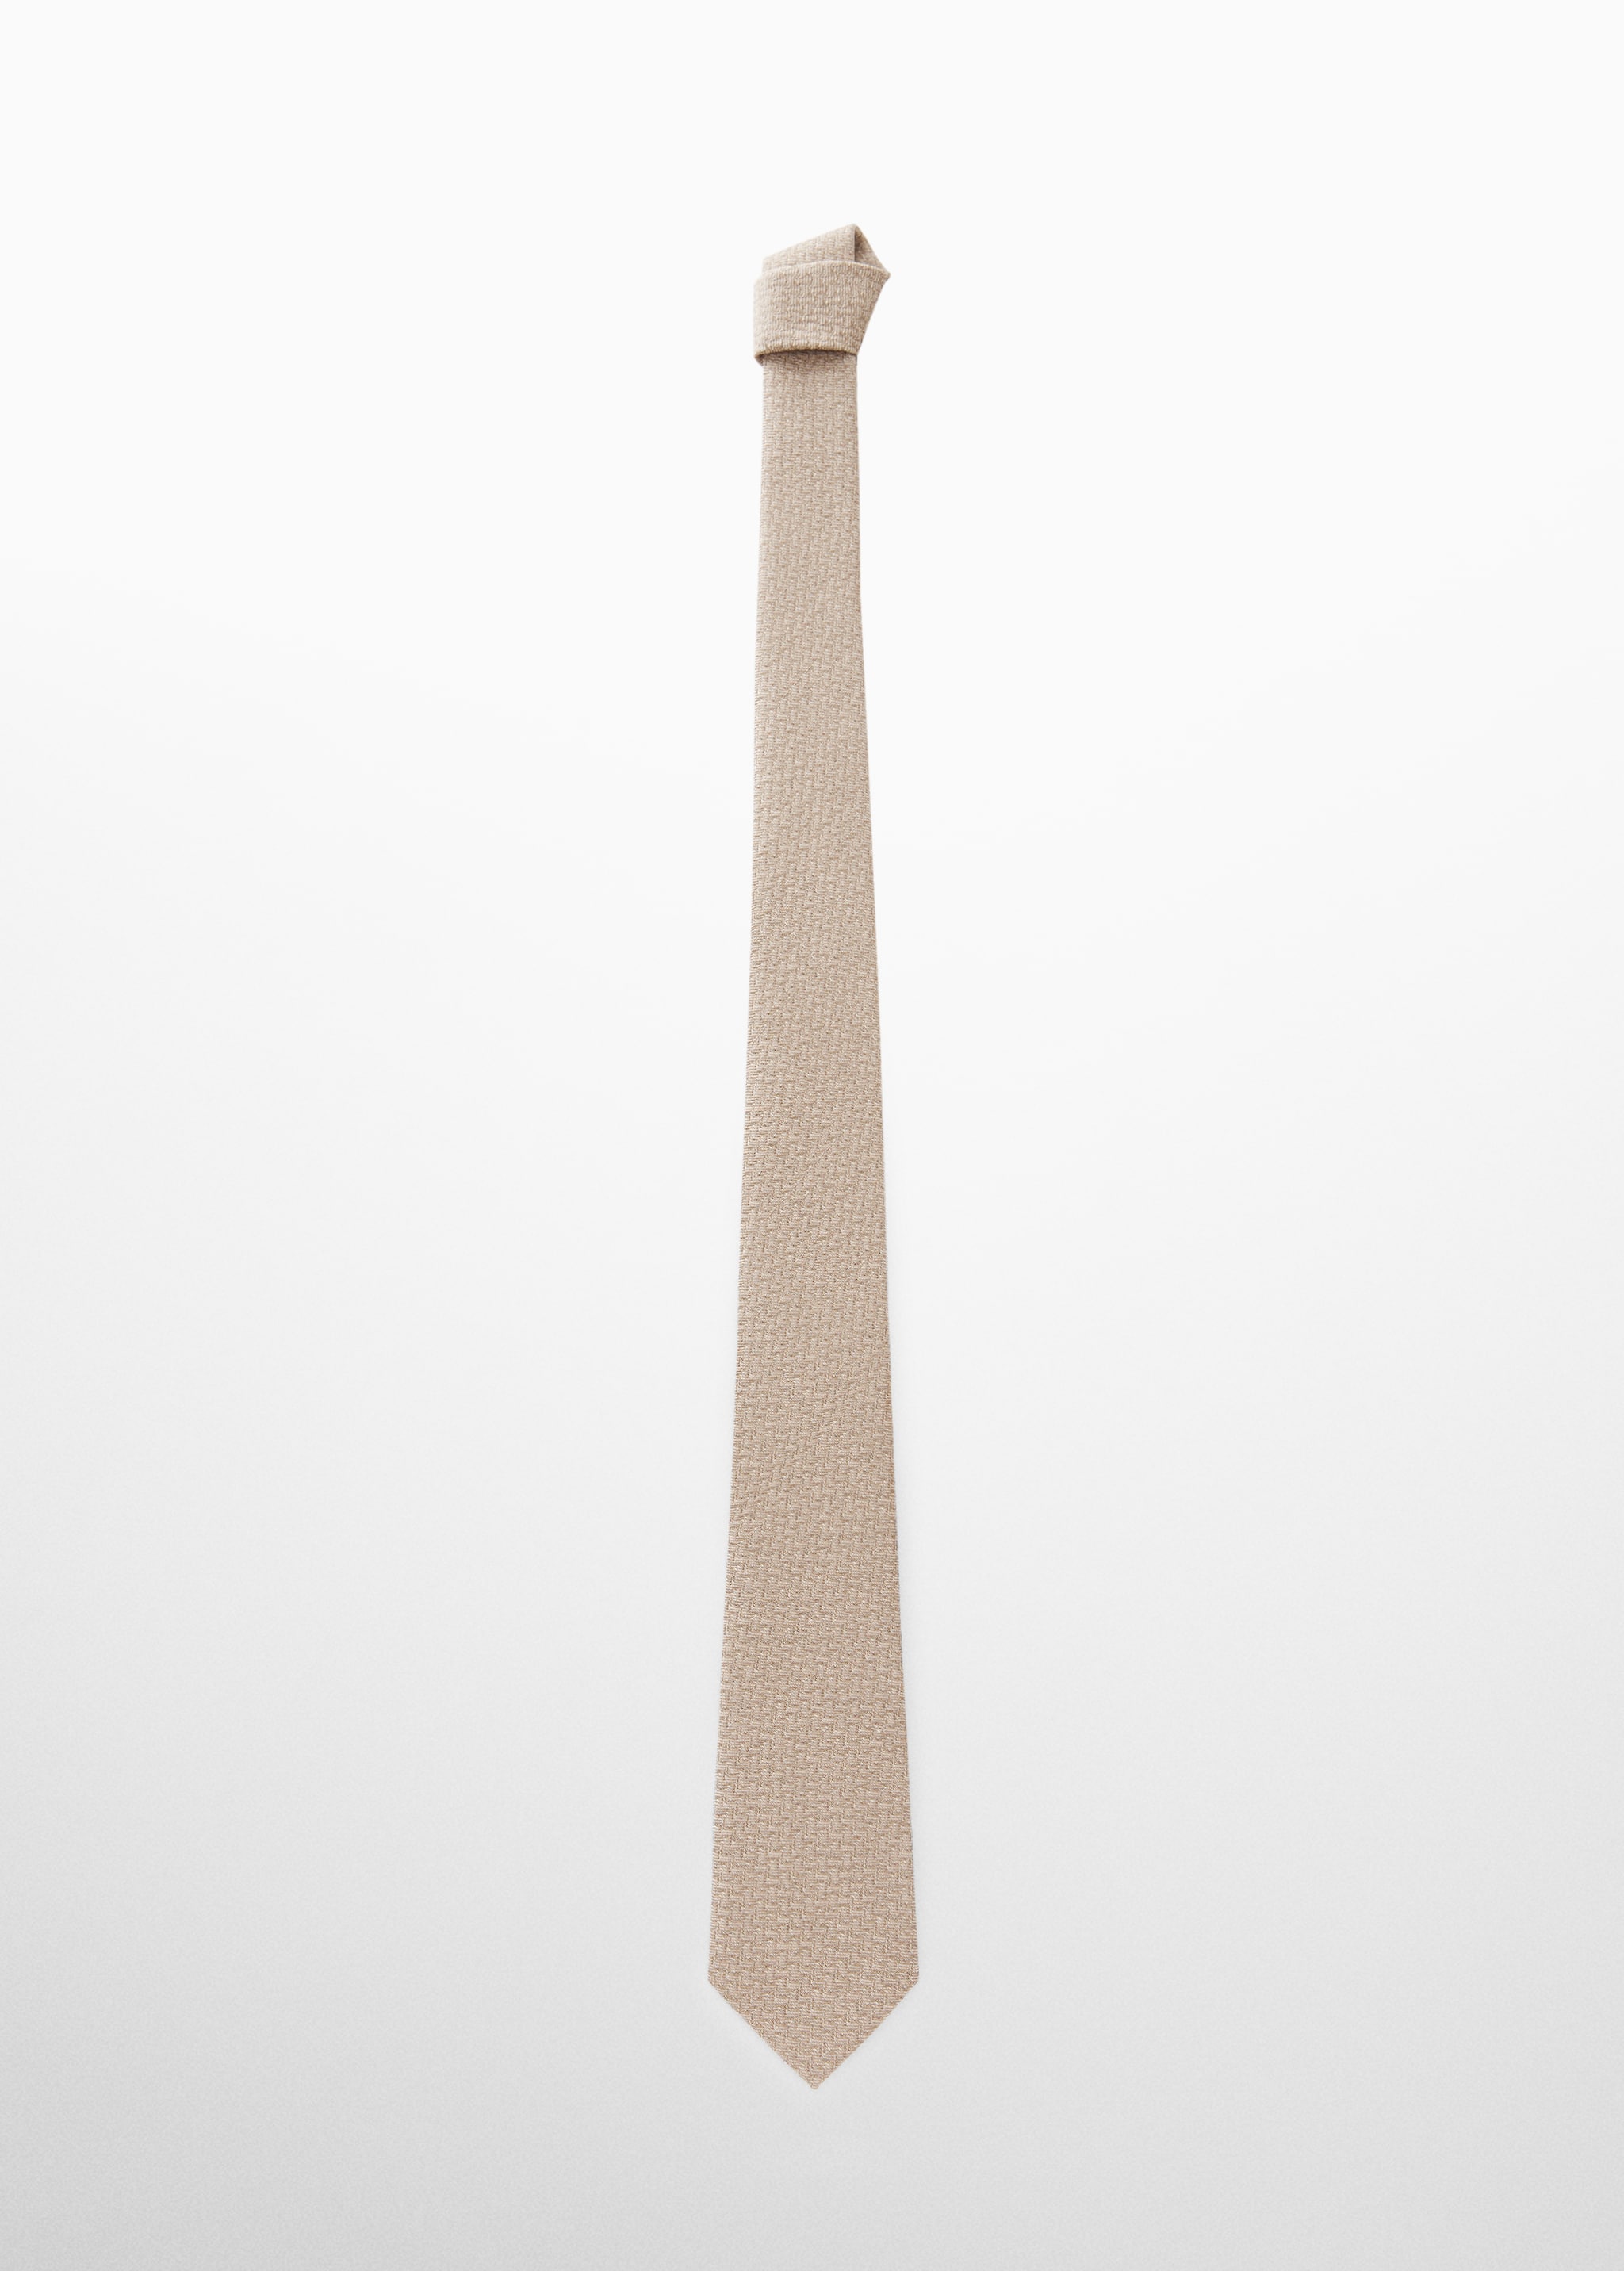 Cravate structurée coton et lin - Article sans modèle